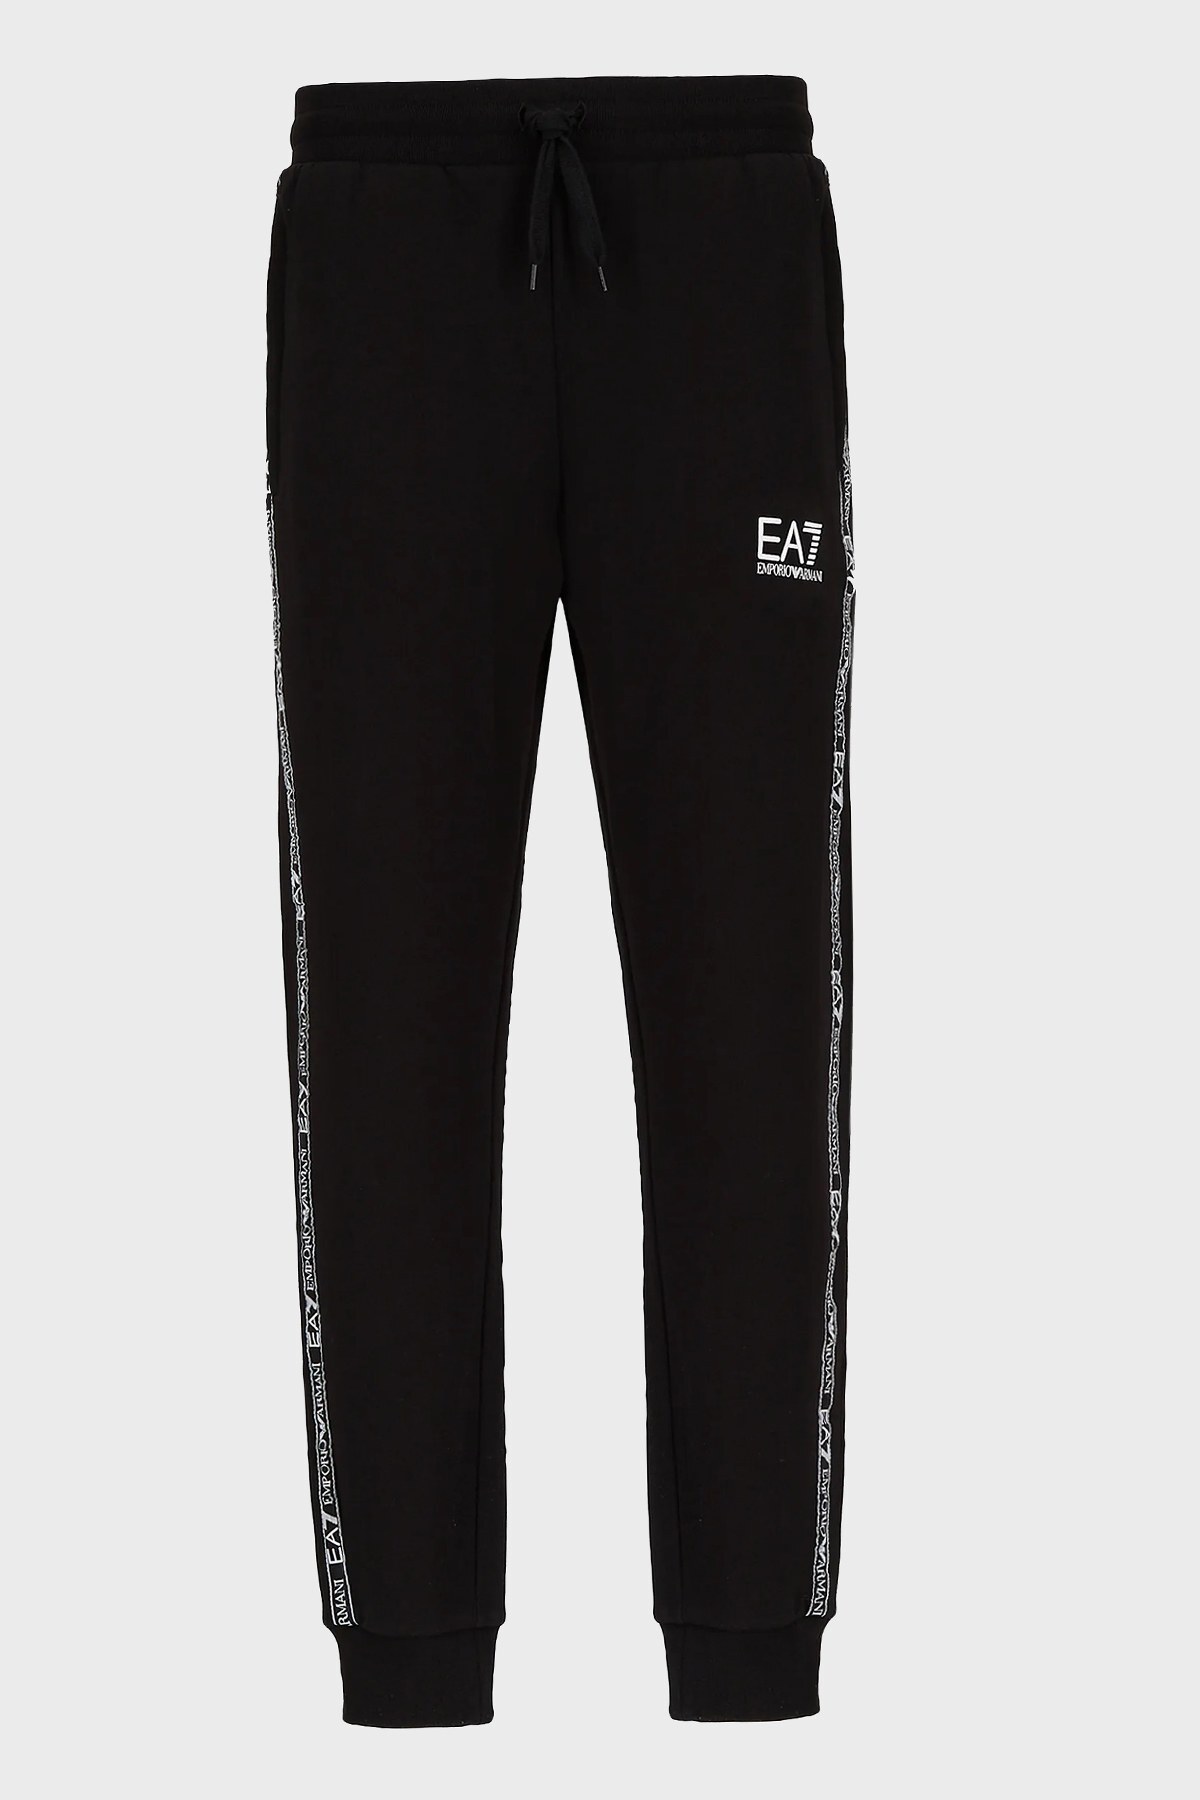 EA7 Marka Logolu Belden Bağlamalı Cepli Pamuklu Erkek Pantolon 6KPP61 PJ07Z 1200 SİYAH